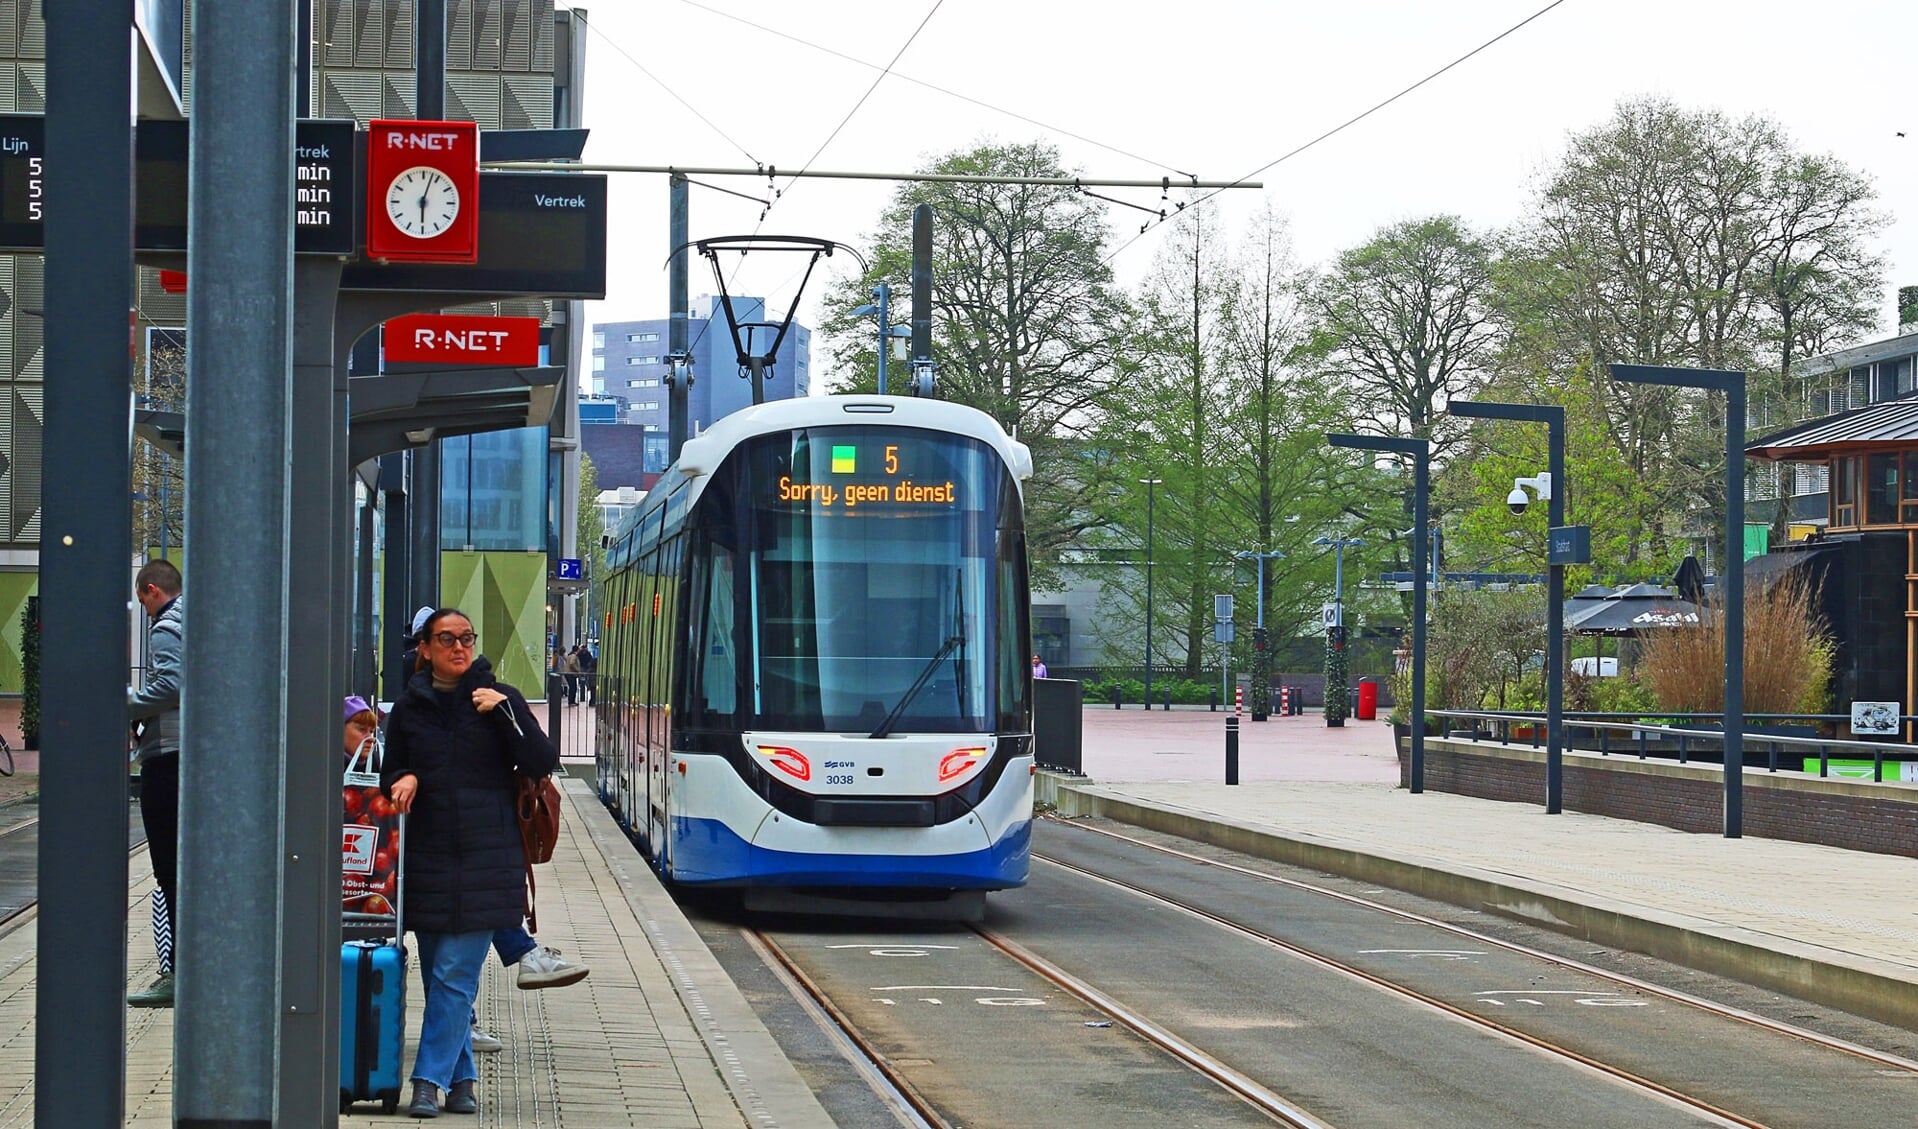 De eindhalte van tramlijn 5 op het Handelsplein. Menigeen ziet de tram graag doorgetrokken naar het busstation.